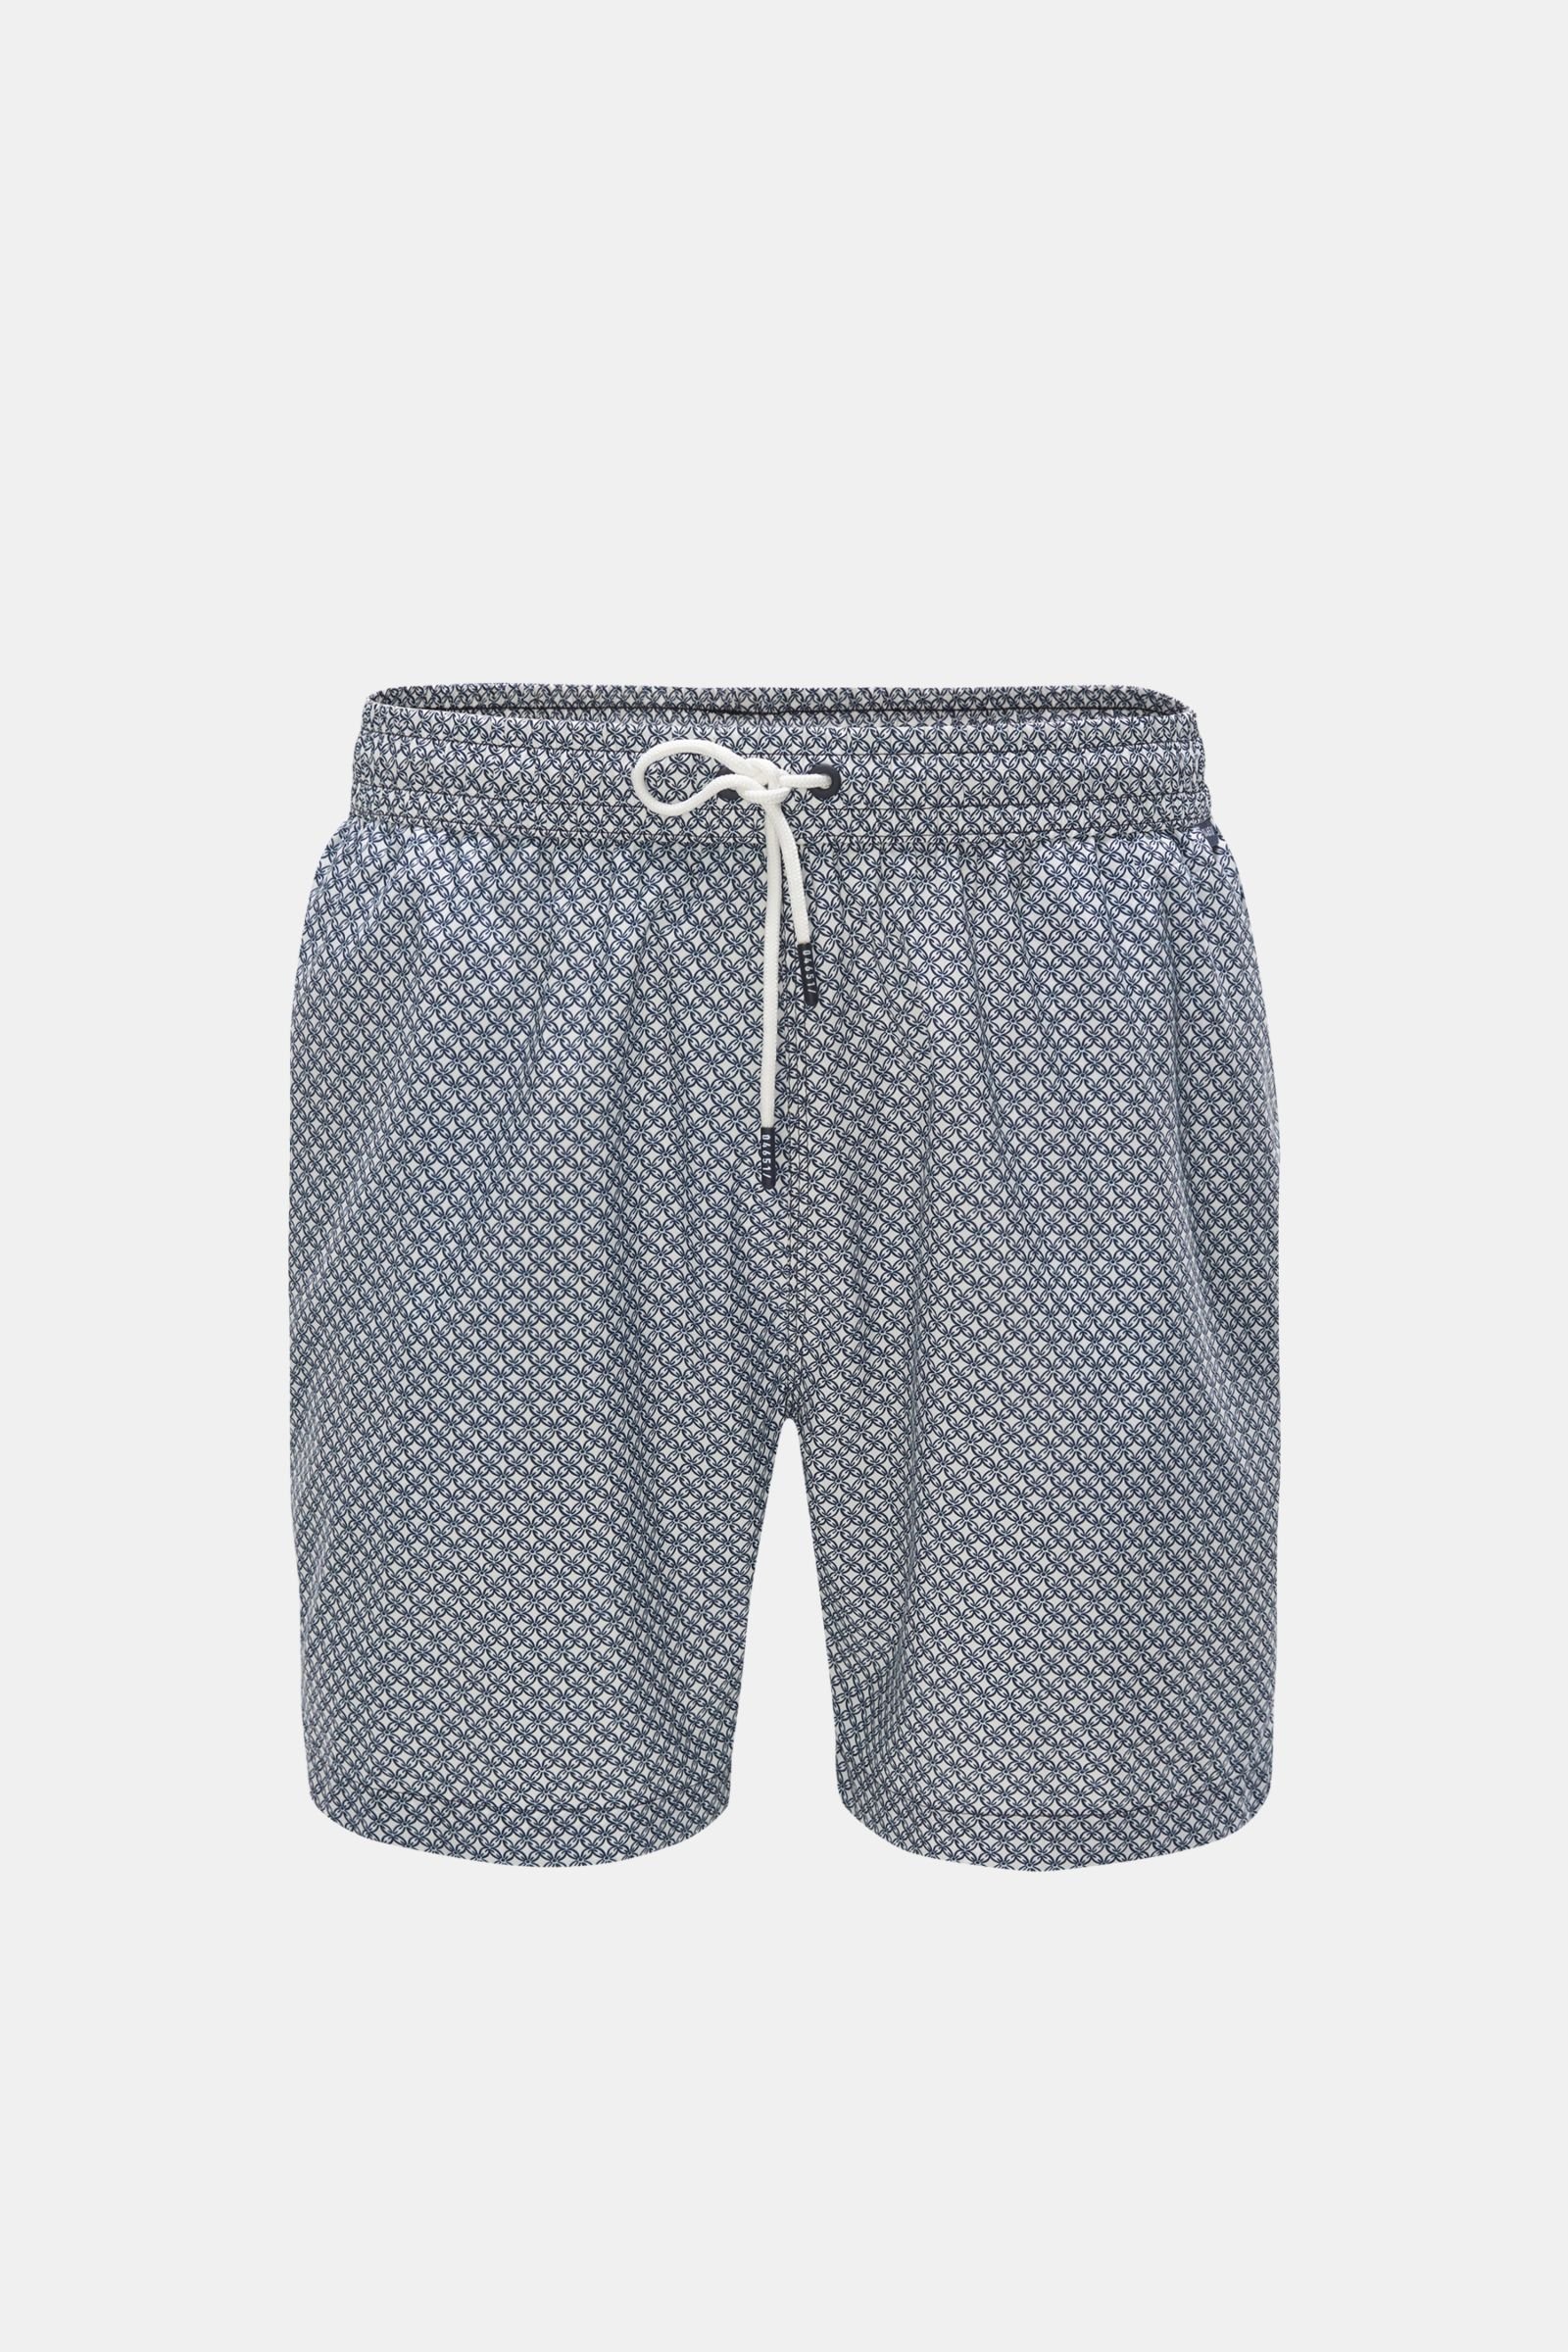 Swim shorts white/navy patterned